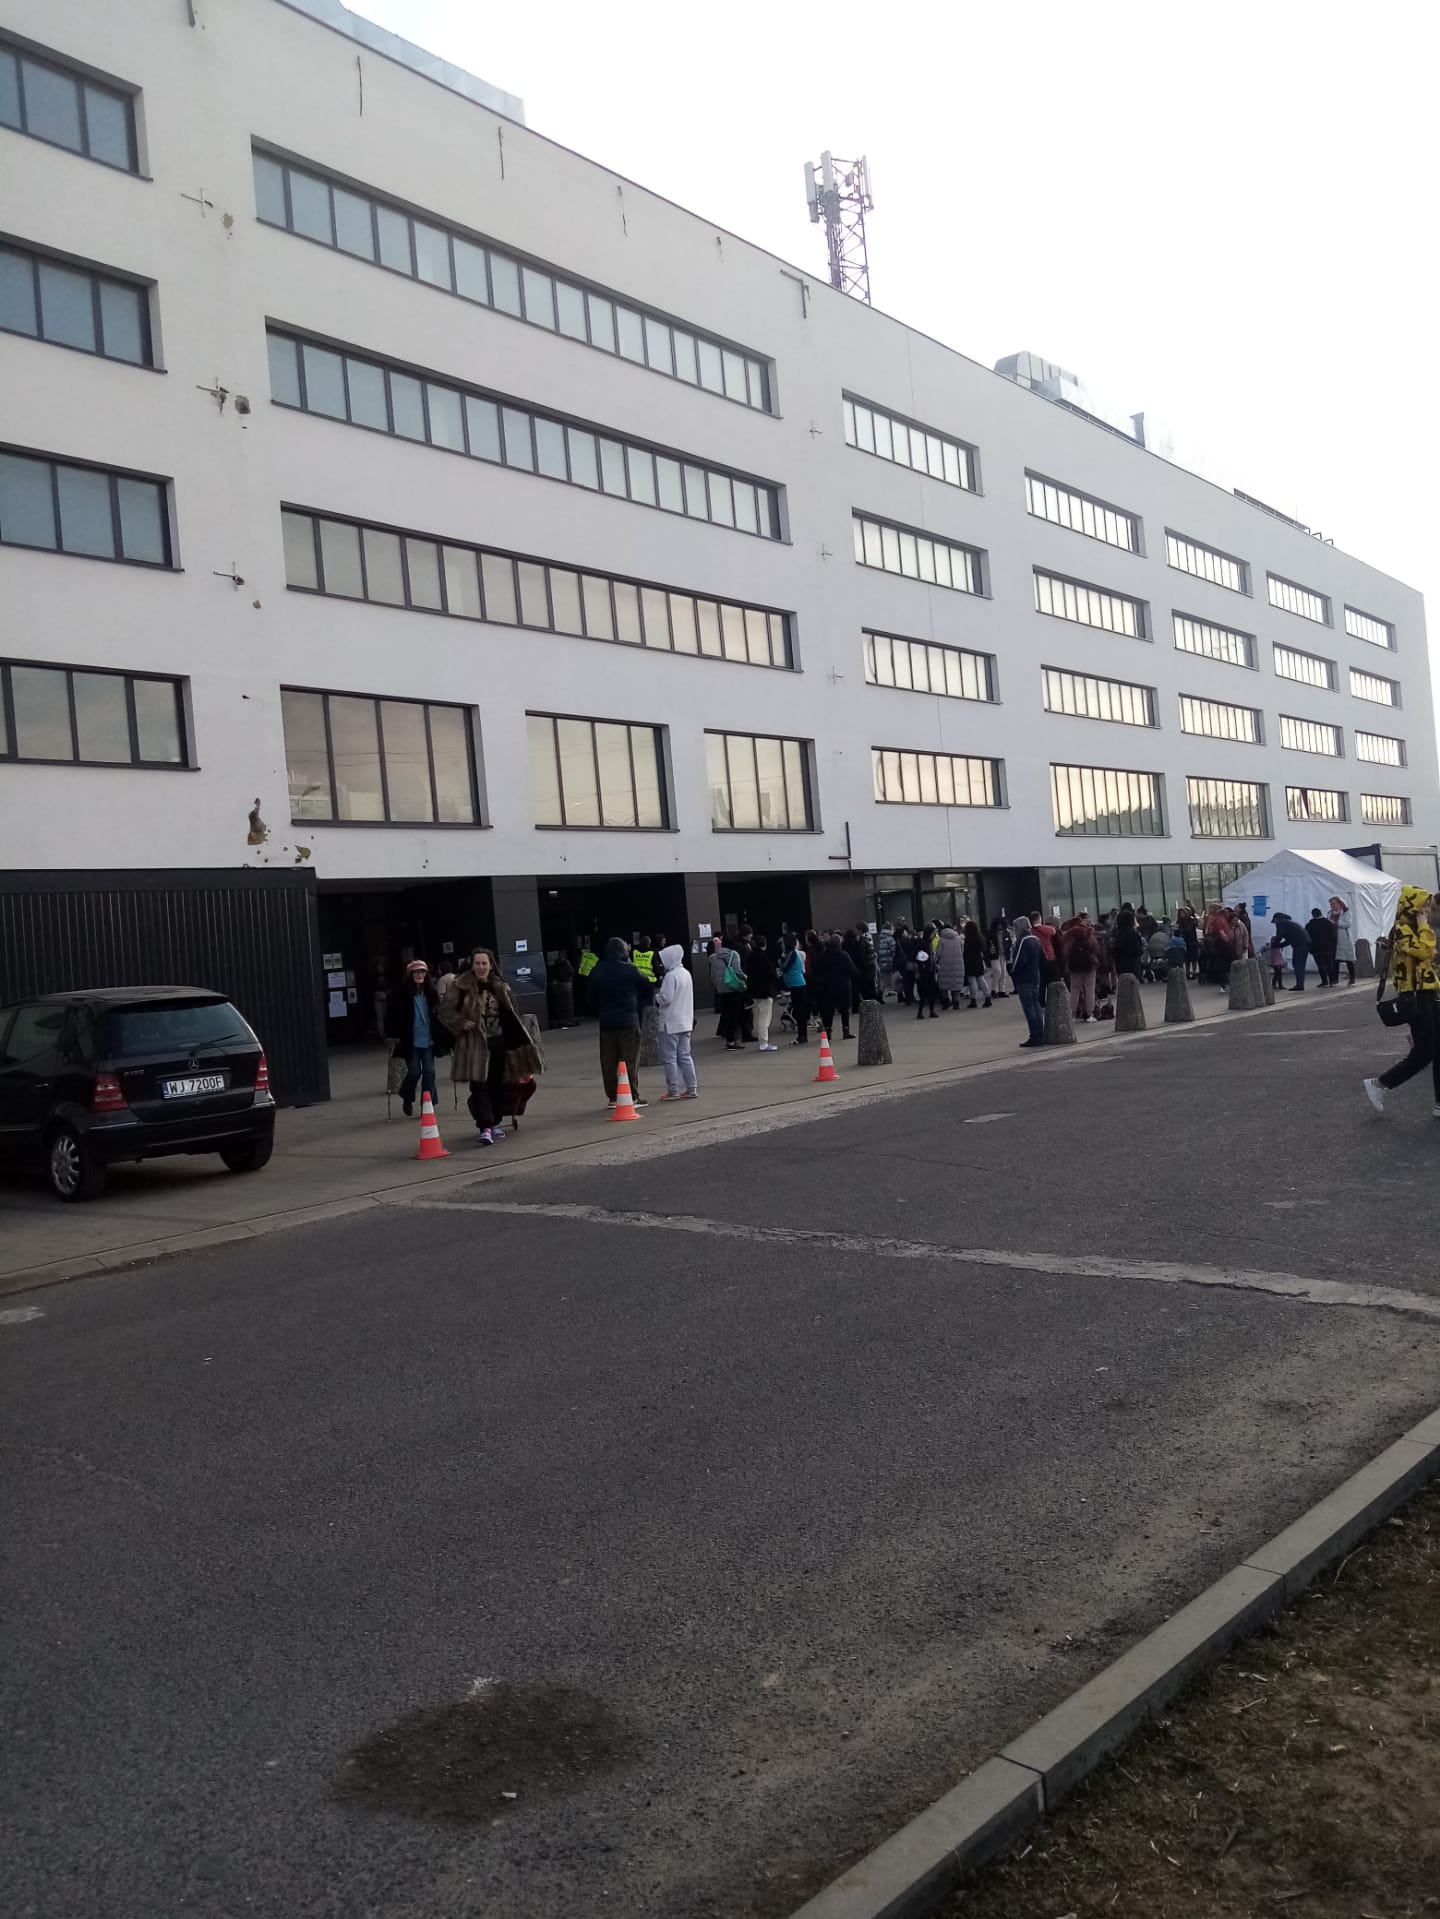 Maior centro de refugiados em Varsóvia foi evacuado mas tratou-se de um falso alarme | Fotogaleria